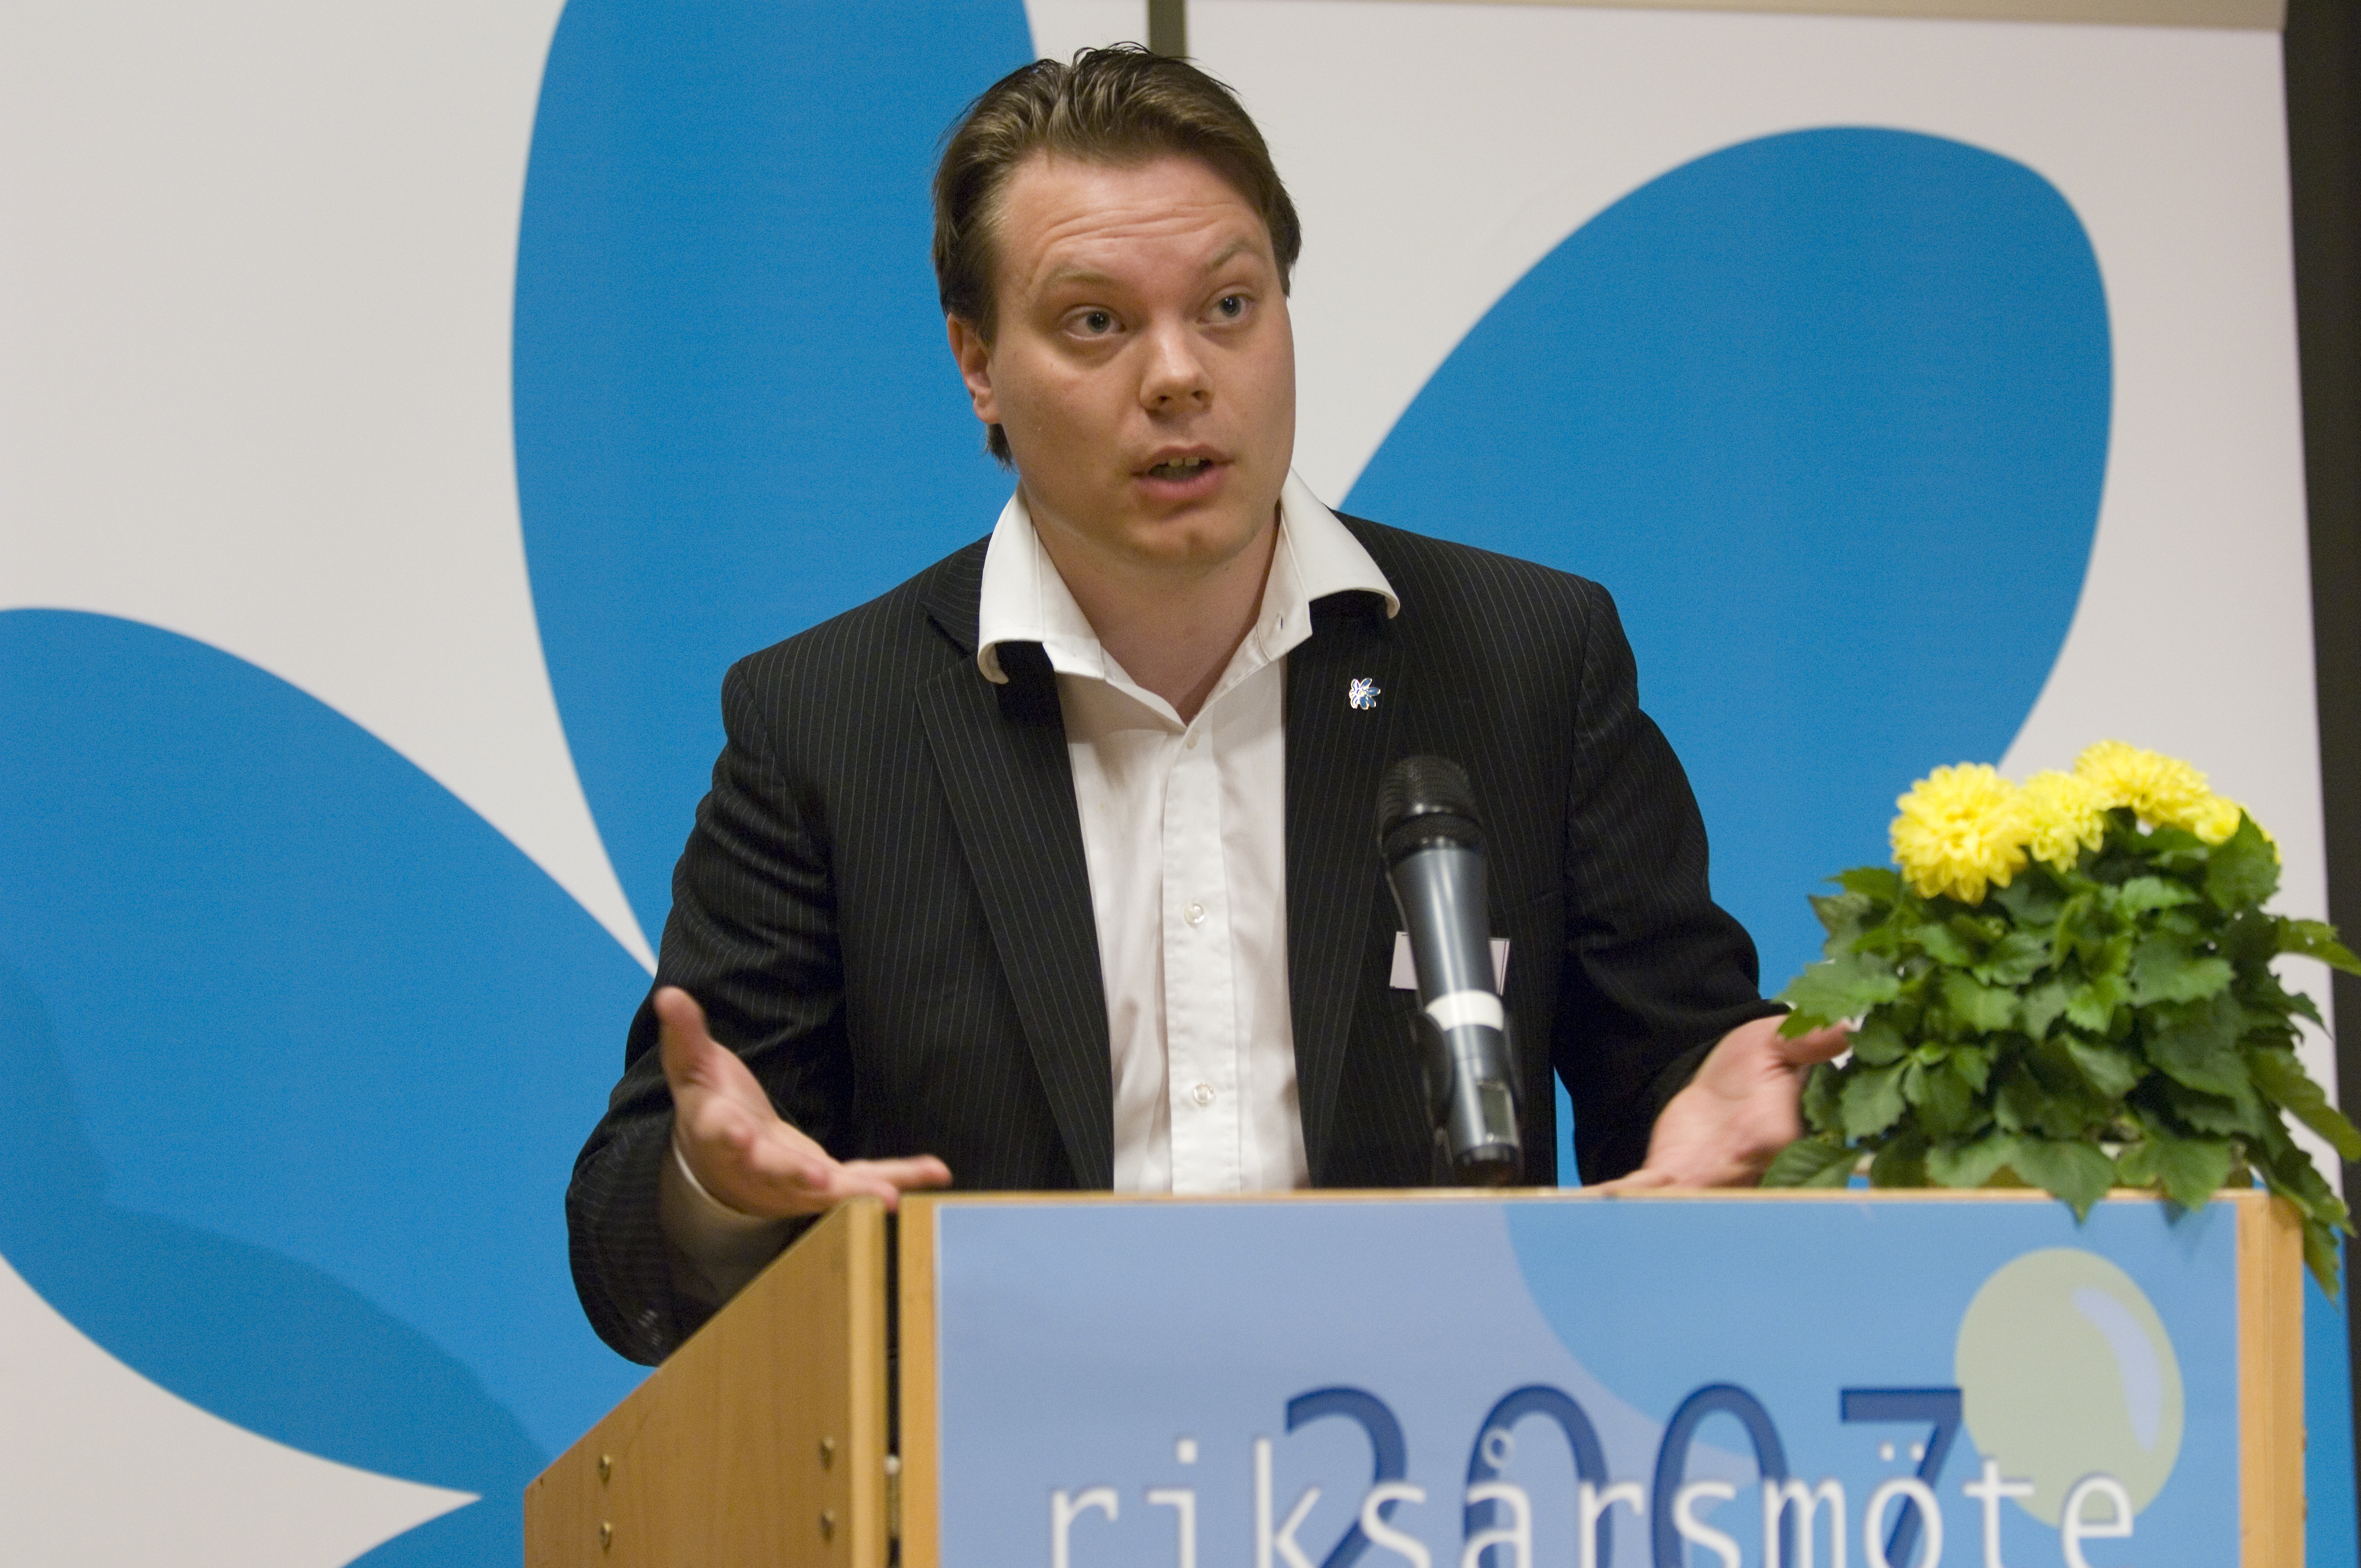 Partiets presschef, Martin Kinnunen, säger sig inte känna till missnöjet.